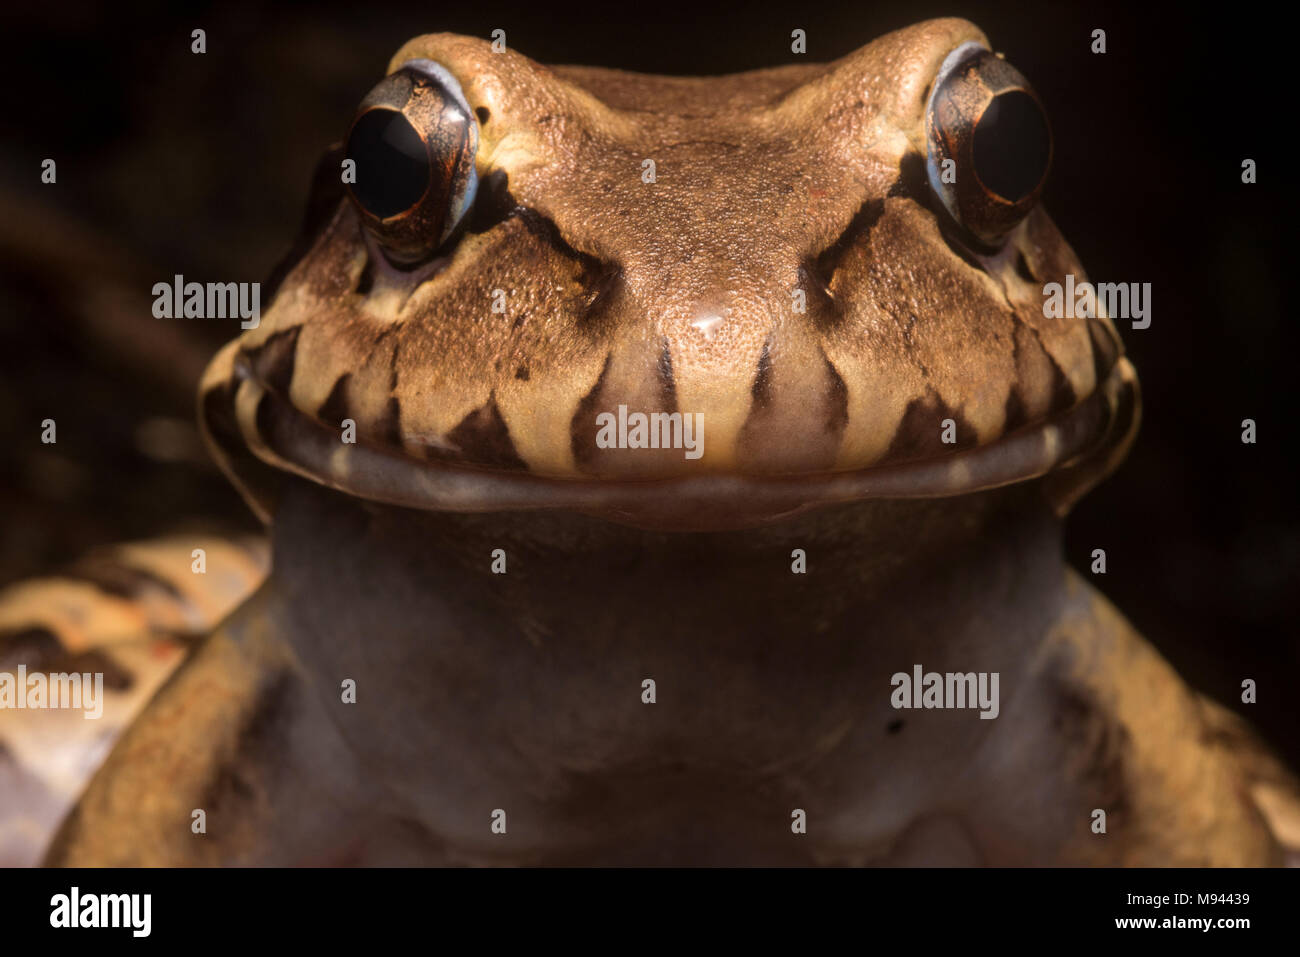 Die rauchigen Jungle frog (Leptodactylus pentadactylus) ist die größte Froscharten im Sortiment, es sitzt auf dem Boden und frisst Kleinere Beute. Stockfoto